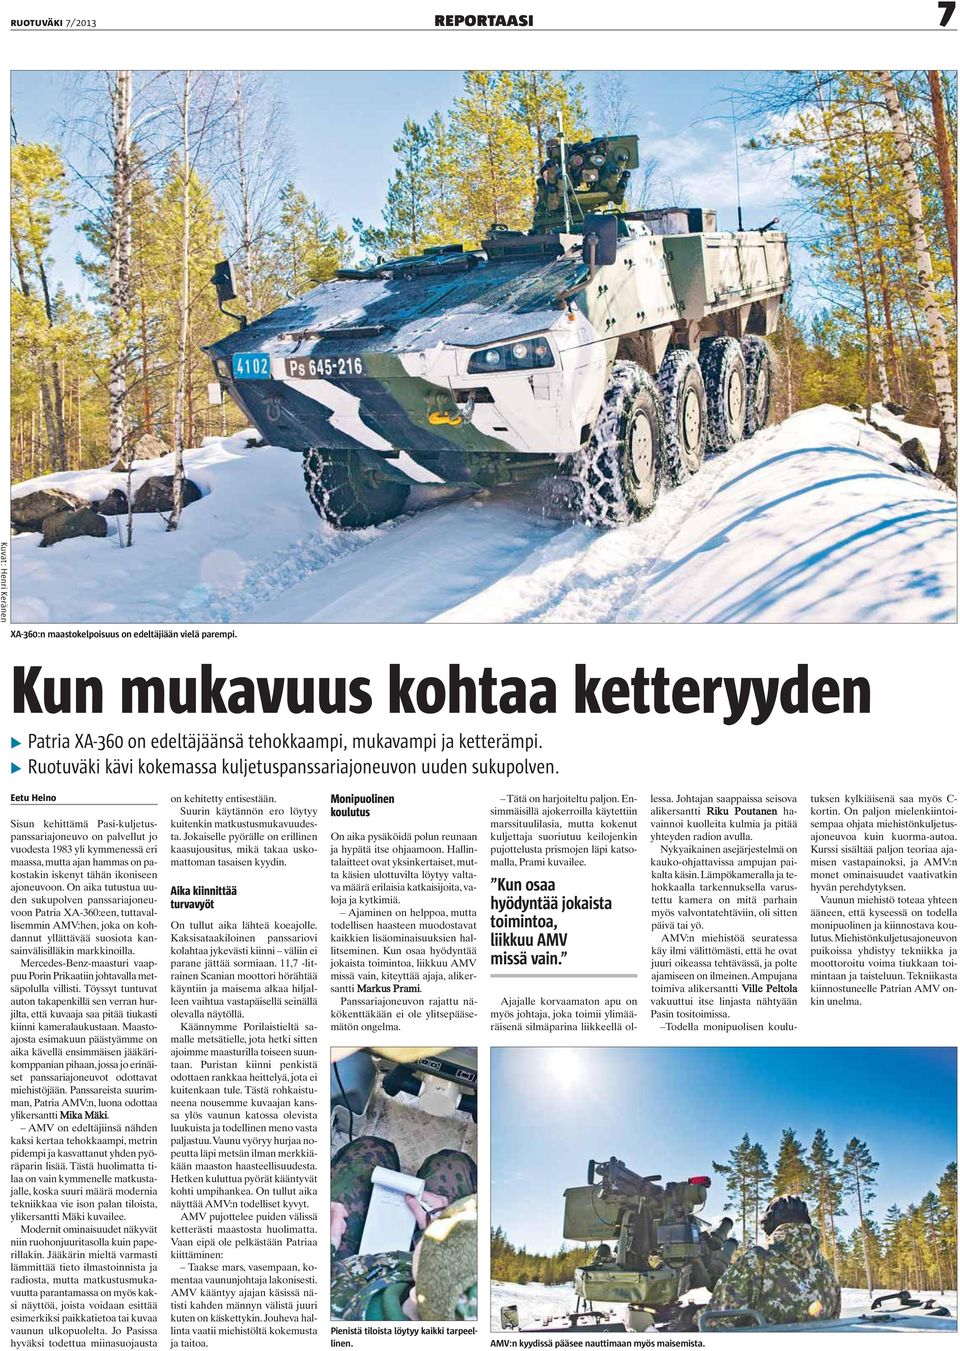 Eetu Heino Sisun kehittämä Pasi-kuljetuspanssariajoneuvo on palvellut jo vuodesta 1983 yli kymmenessä eri maassa, mutta ajan hammas on pakostakin iskenyt tähän ikoniseen ajoneuvoon.